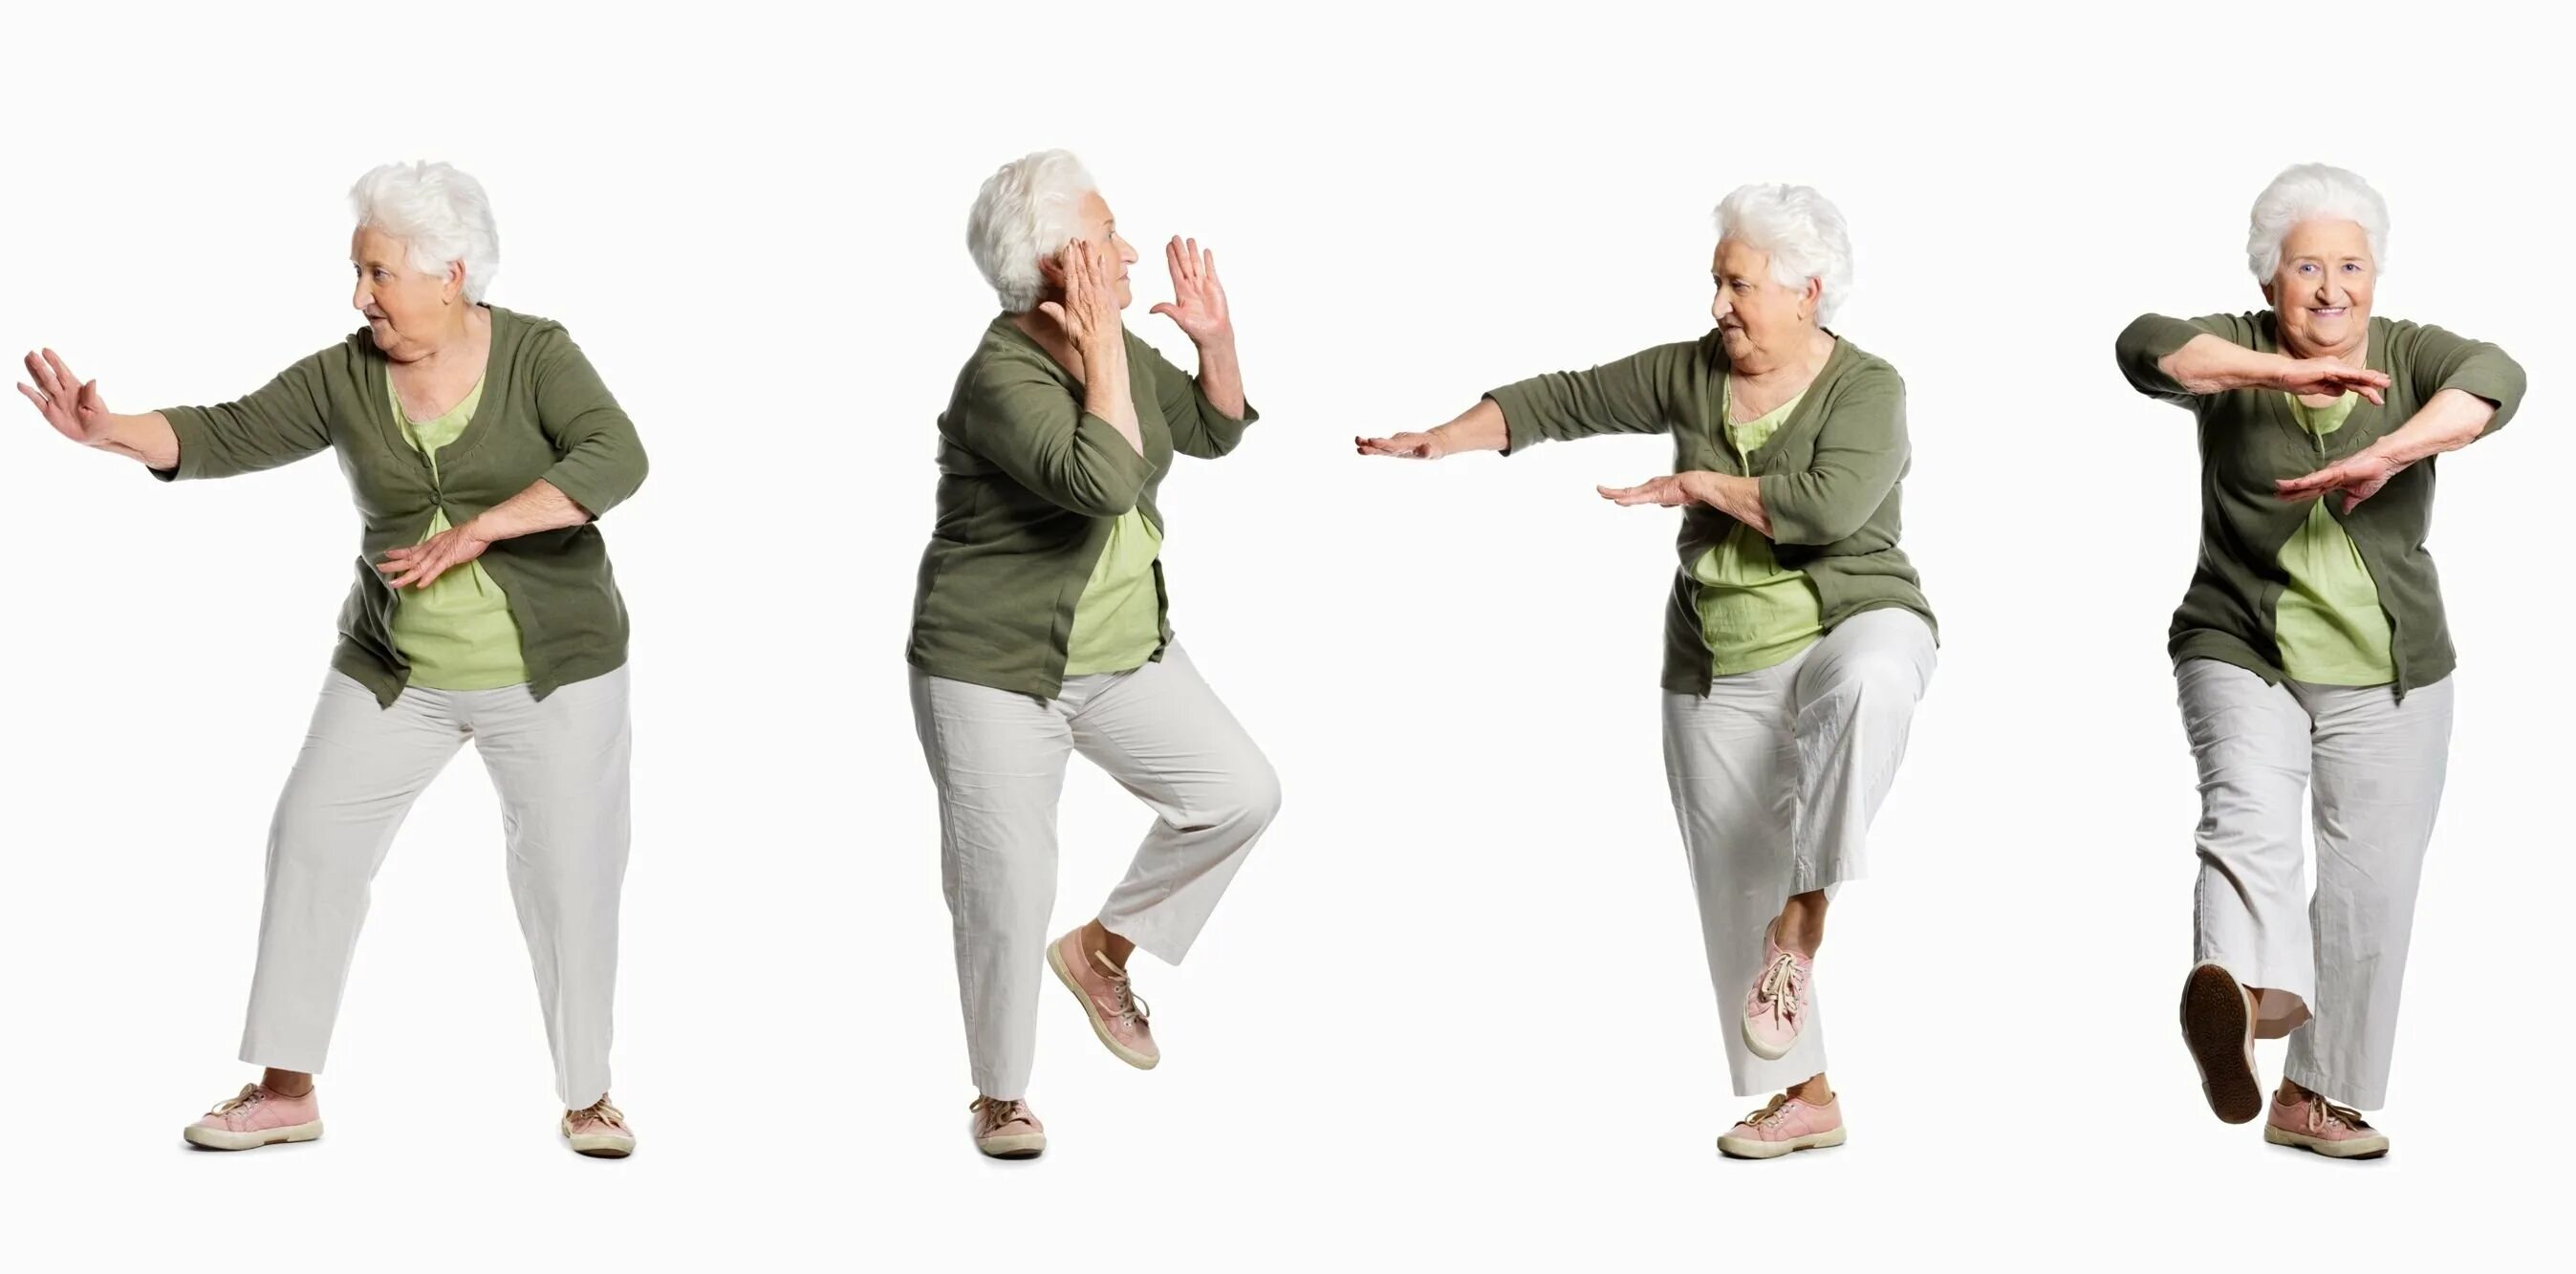 Координация пожилые. Физкультура для пожилых. Цигун для пожилых людей. Физическая активность пожилых людей. Счастливые пожилые люди.